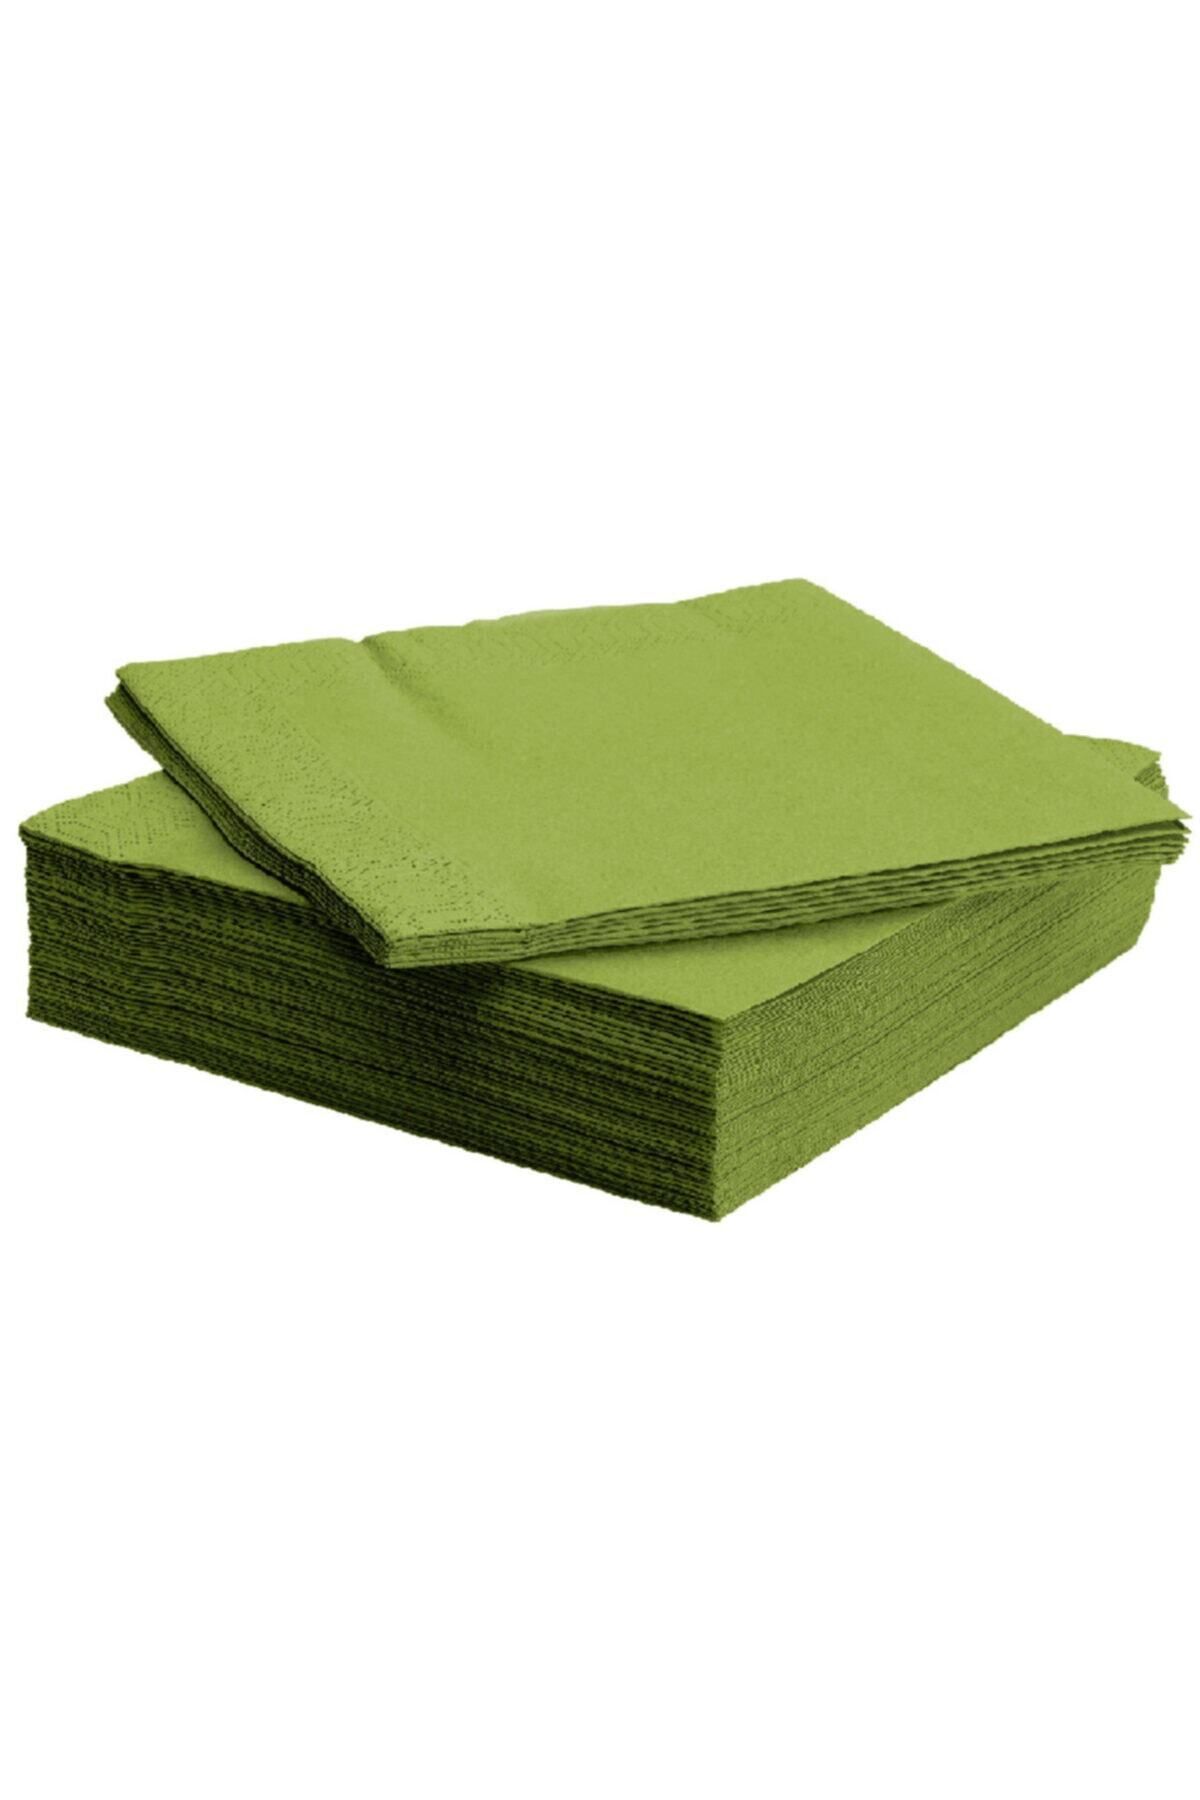 IKEA Thetasarım Servis Peçete Meridyendukkan 40x40 Cm 50 Adet Yeşil Renkli Peçete Yeşil Peçete